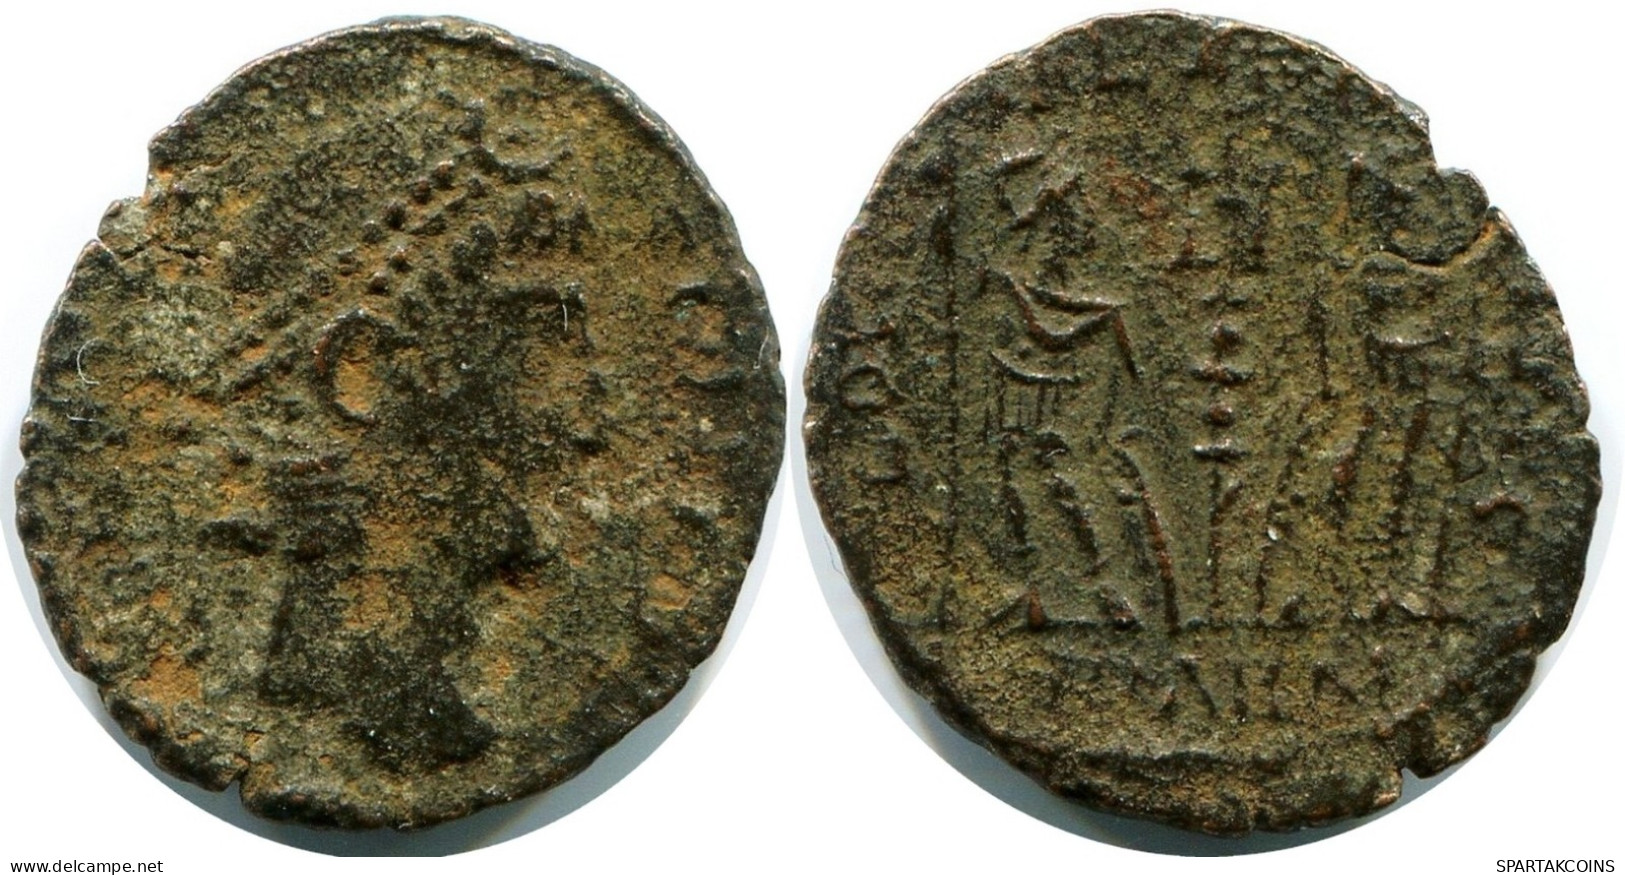 ROMAN Moneda MINTED IN ANTIOCH FOUND IN IHNASYAH HOARD EGYPT #ANC11304.14.E.A - Der Christlischen Kaiser (307 / 363)